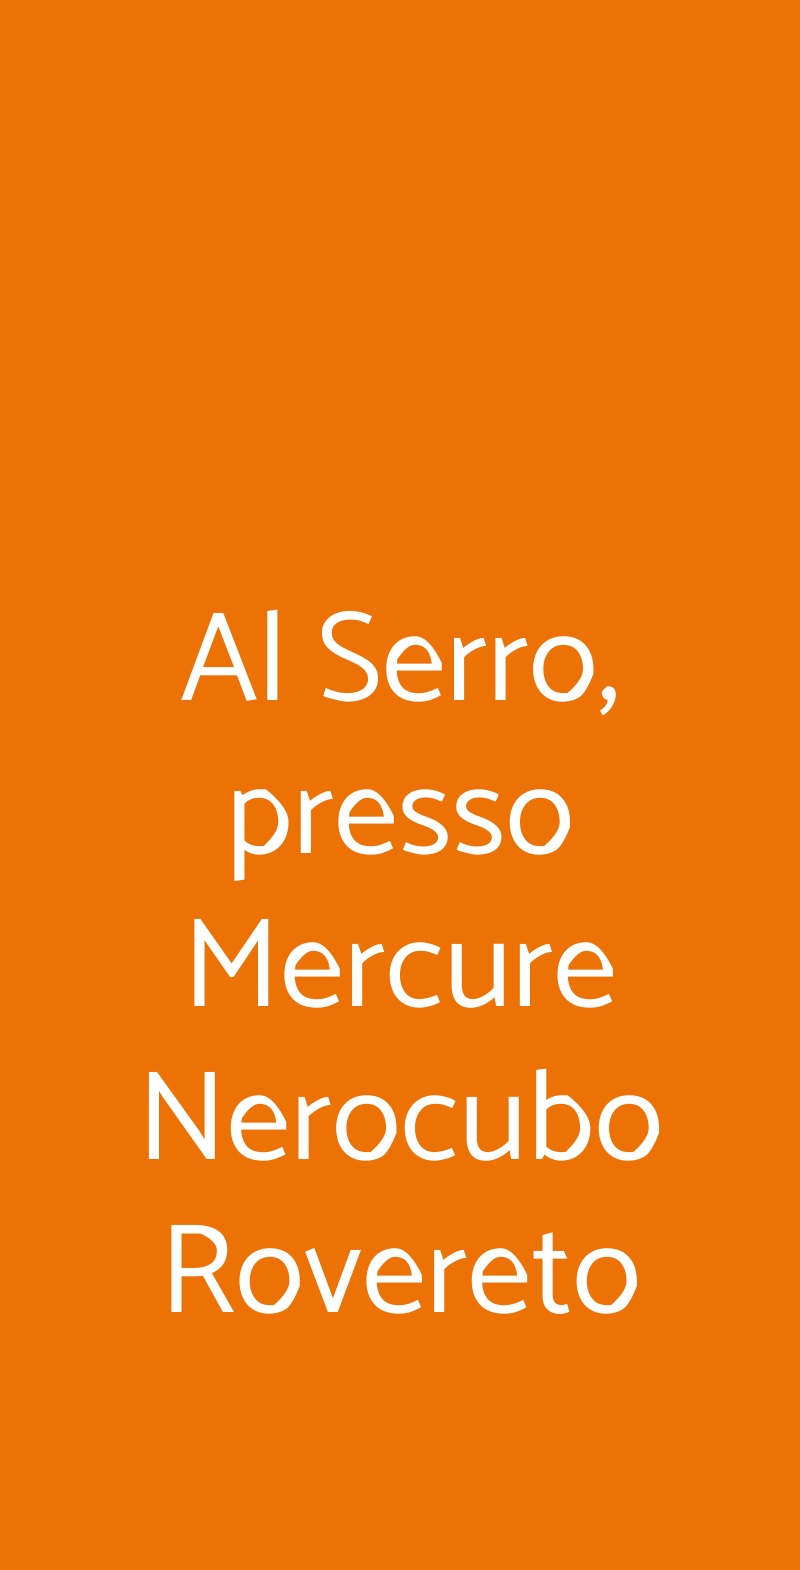 Al Serro, presso Mercure Nerocubo Rovereto Rovereto menù 1 pagina